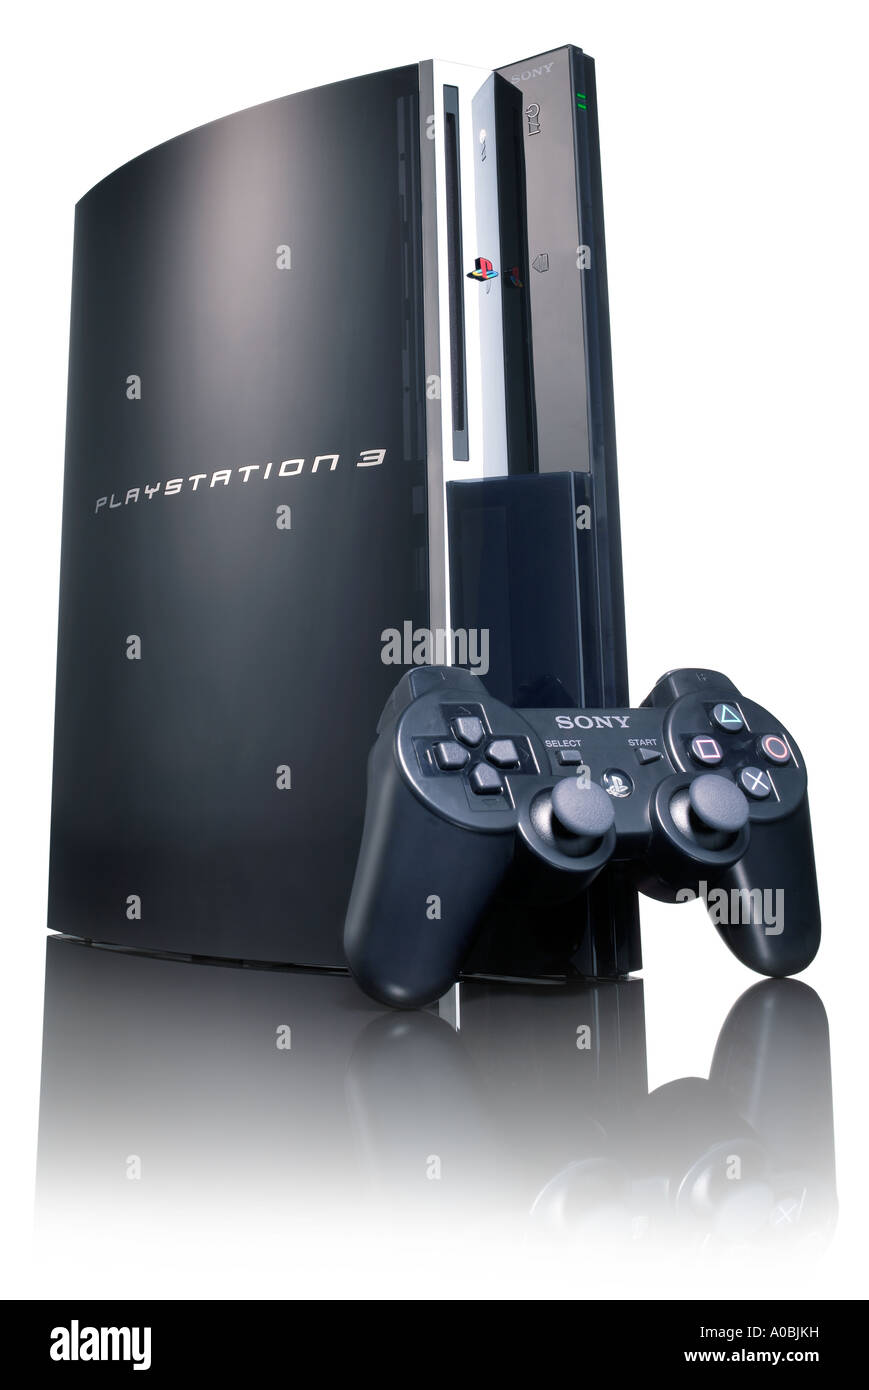 Playstation 3 immagini e fotografie stock ad alta risoluzione - Alamy